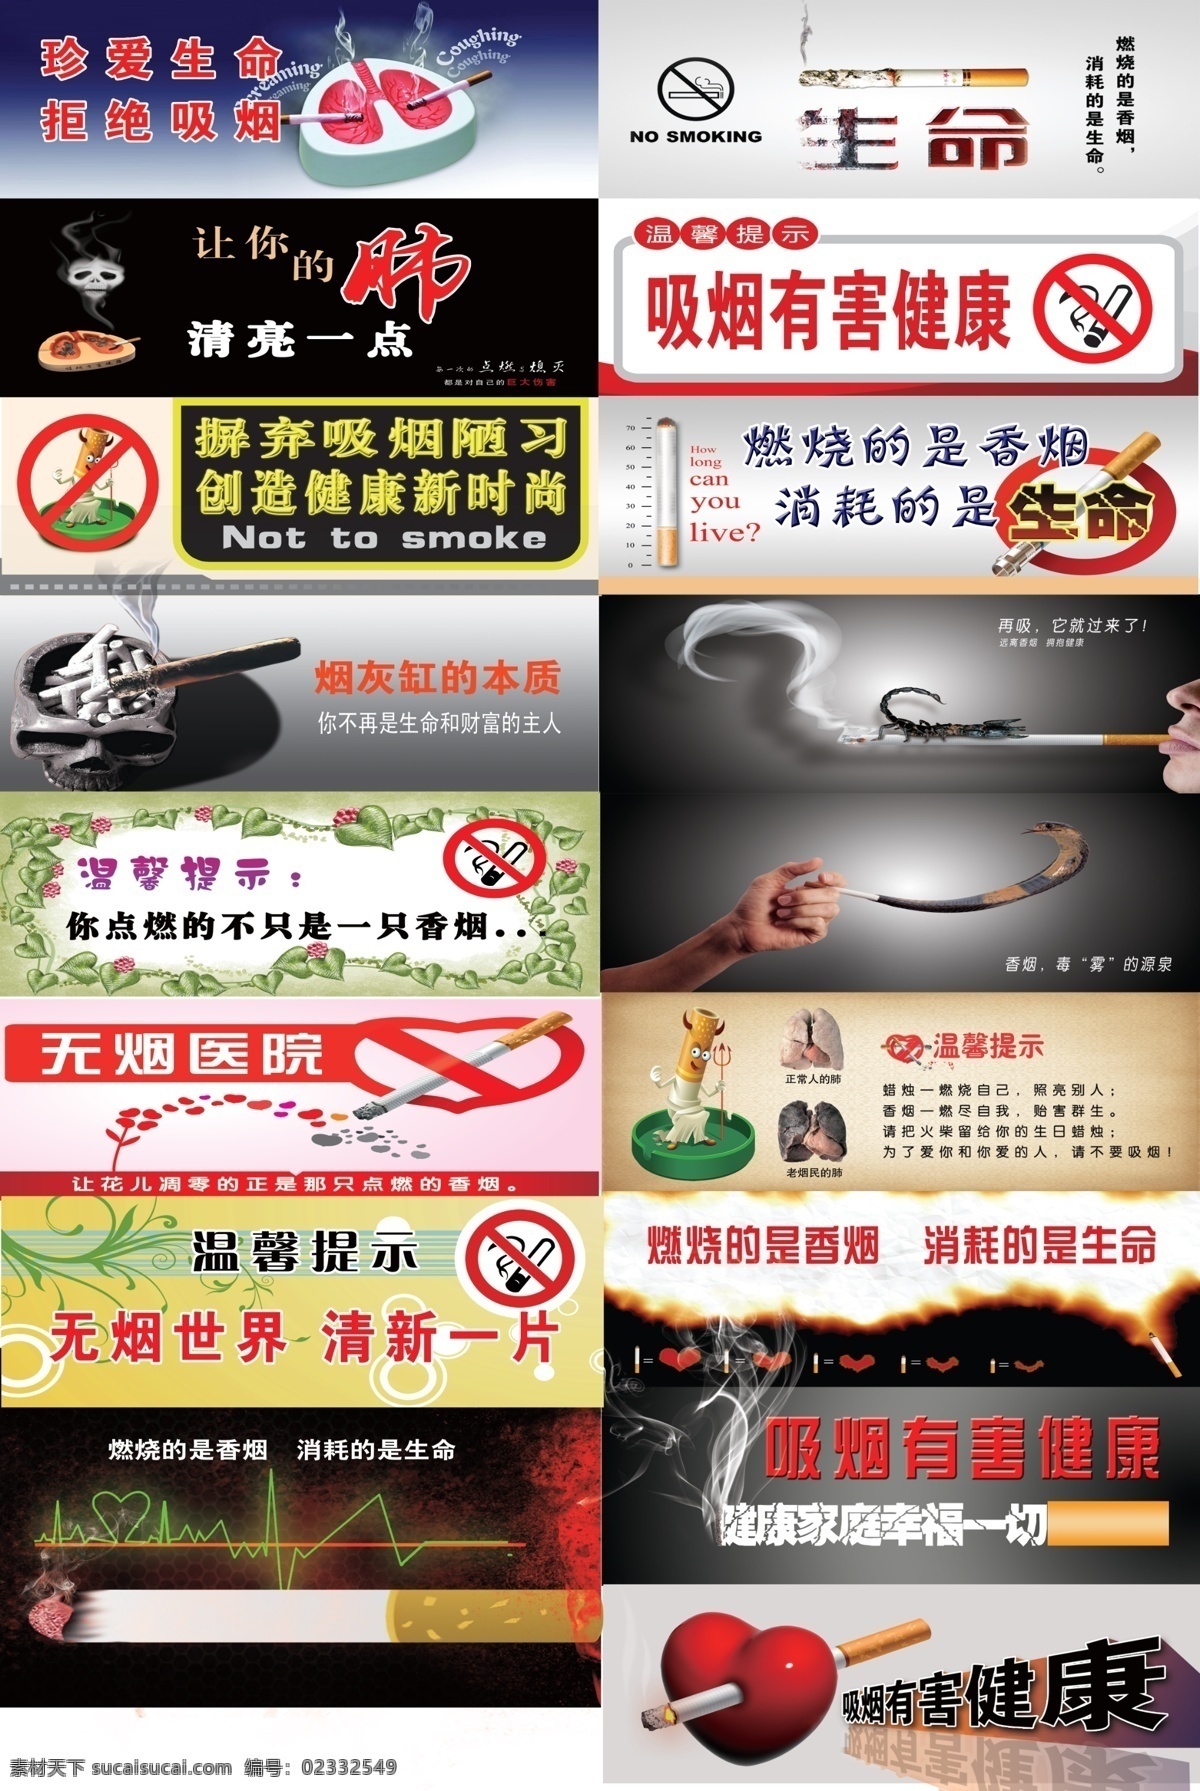 禁烟宣传 禁烟 禁 烟 禁止吸烟 吸烟 吸烟有害 有害健康 广告设计模板 源文件